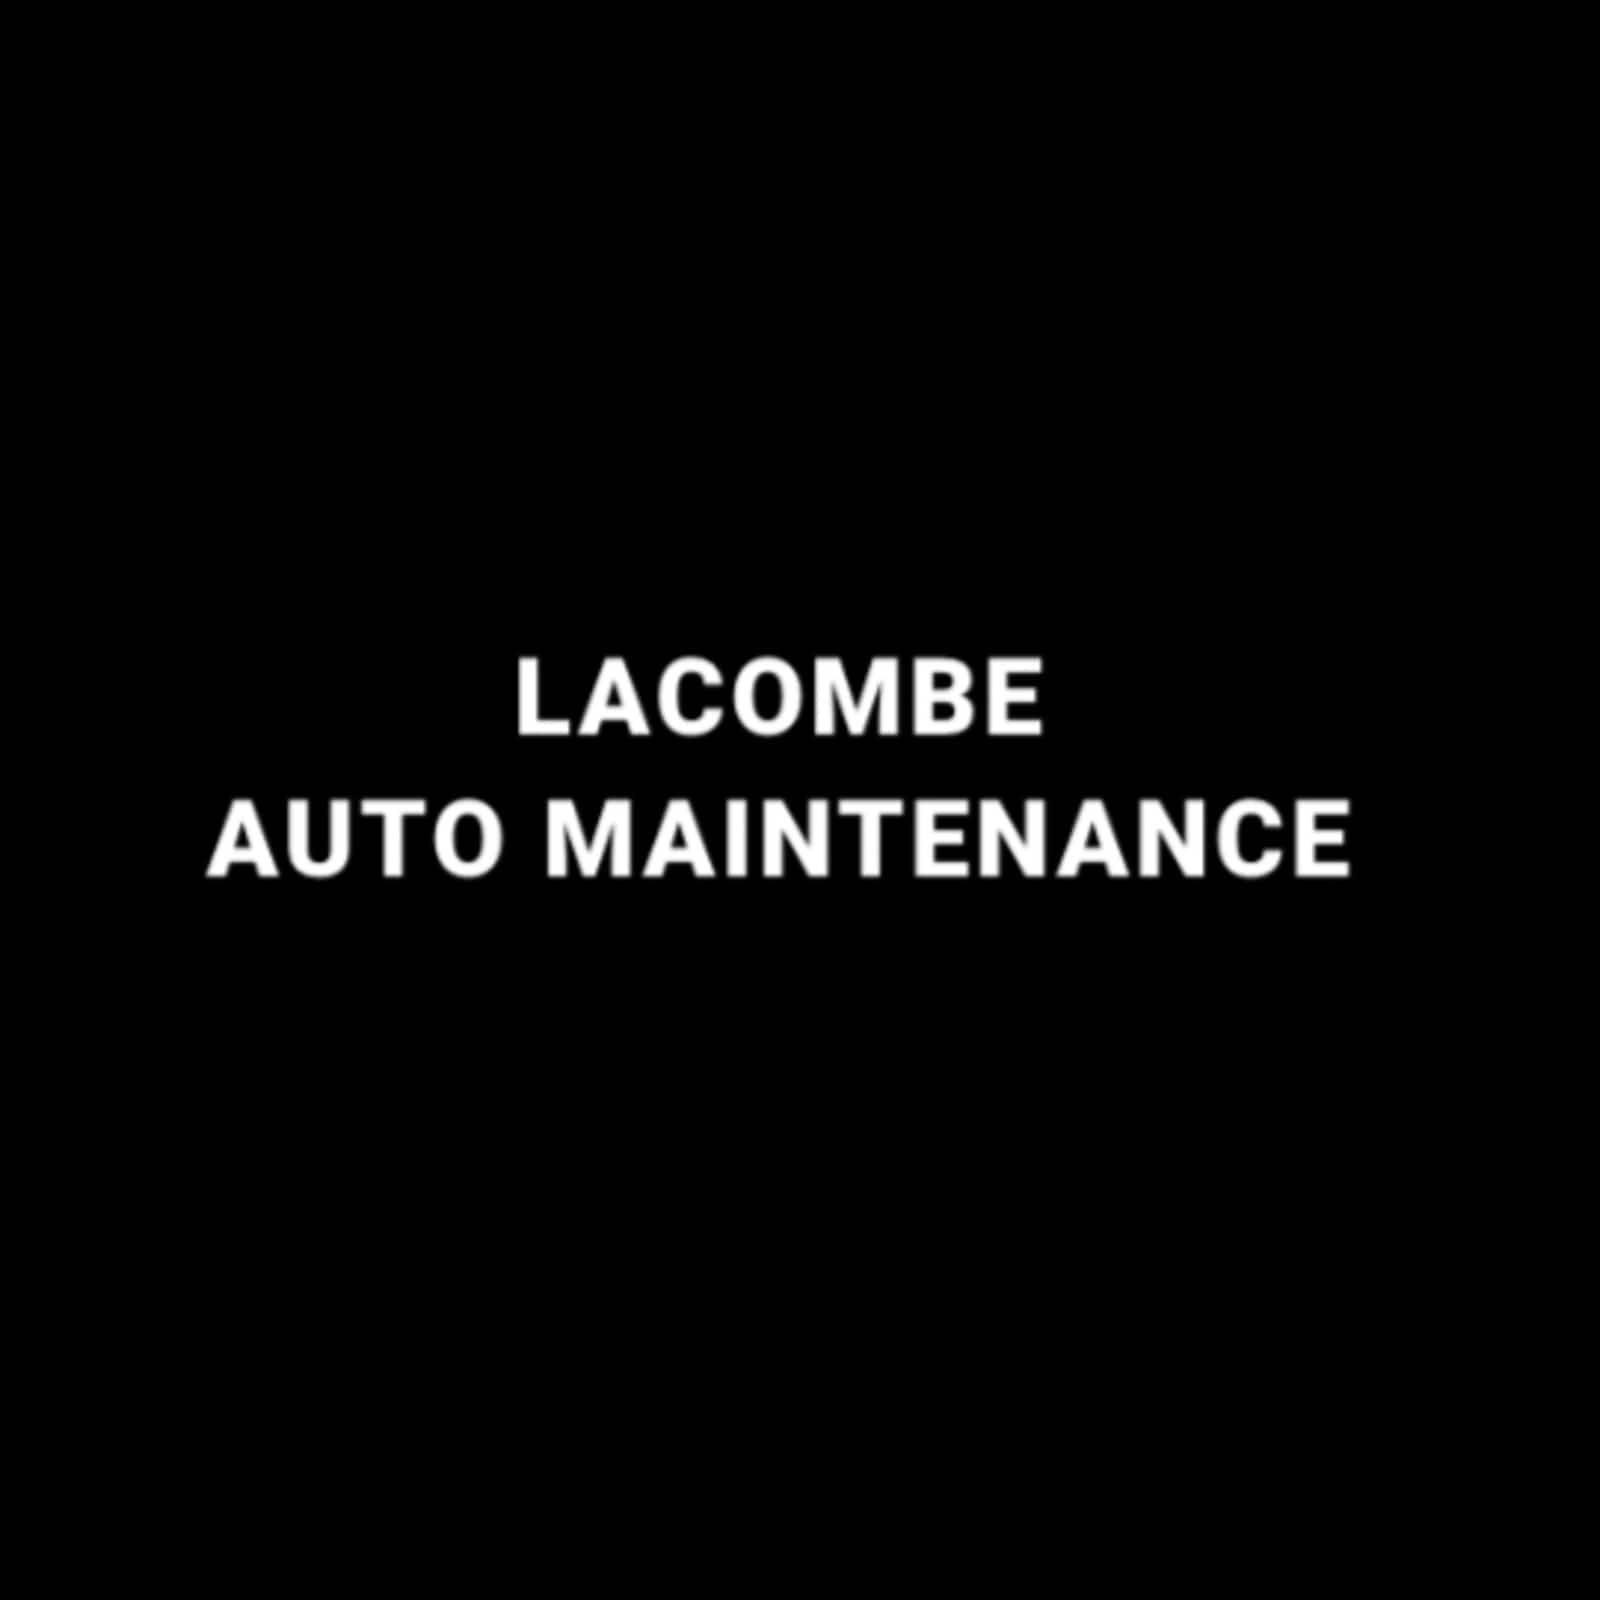 Lacombe Auto maintenance 366 Bd Laurier, Sainte-Madeleine Quebec J0H 1S0